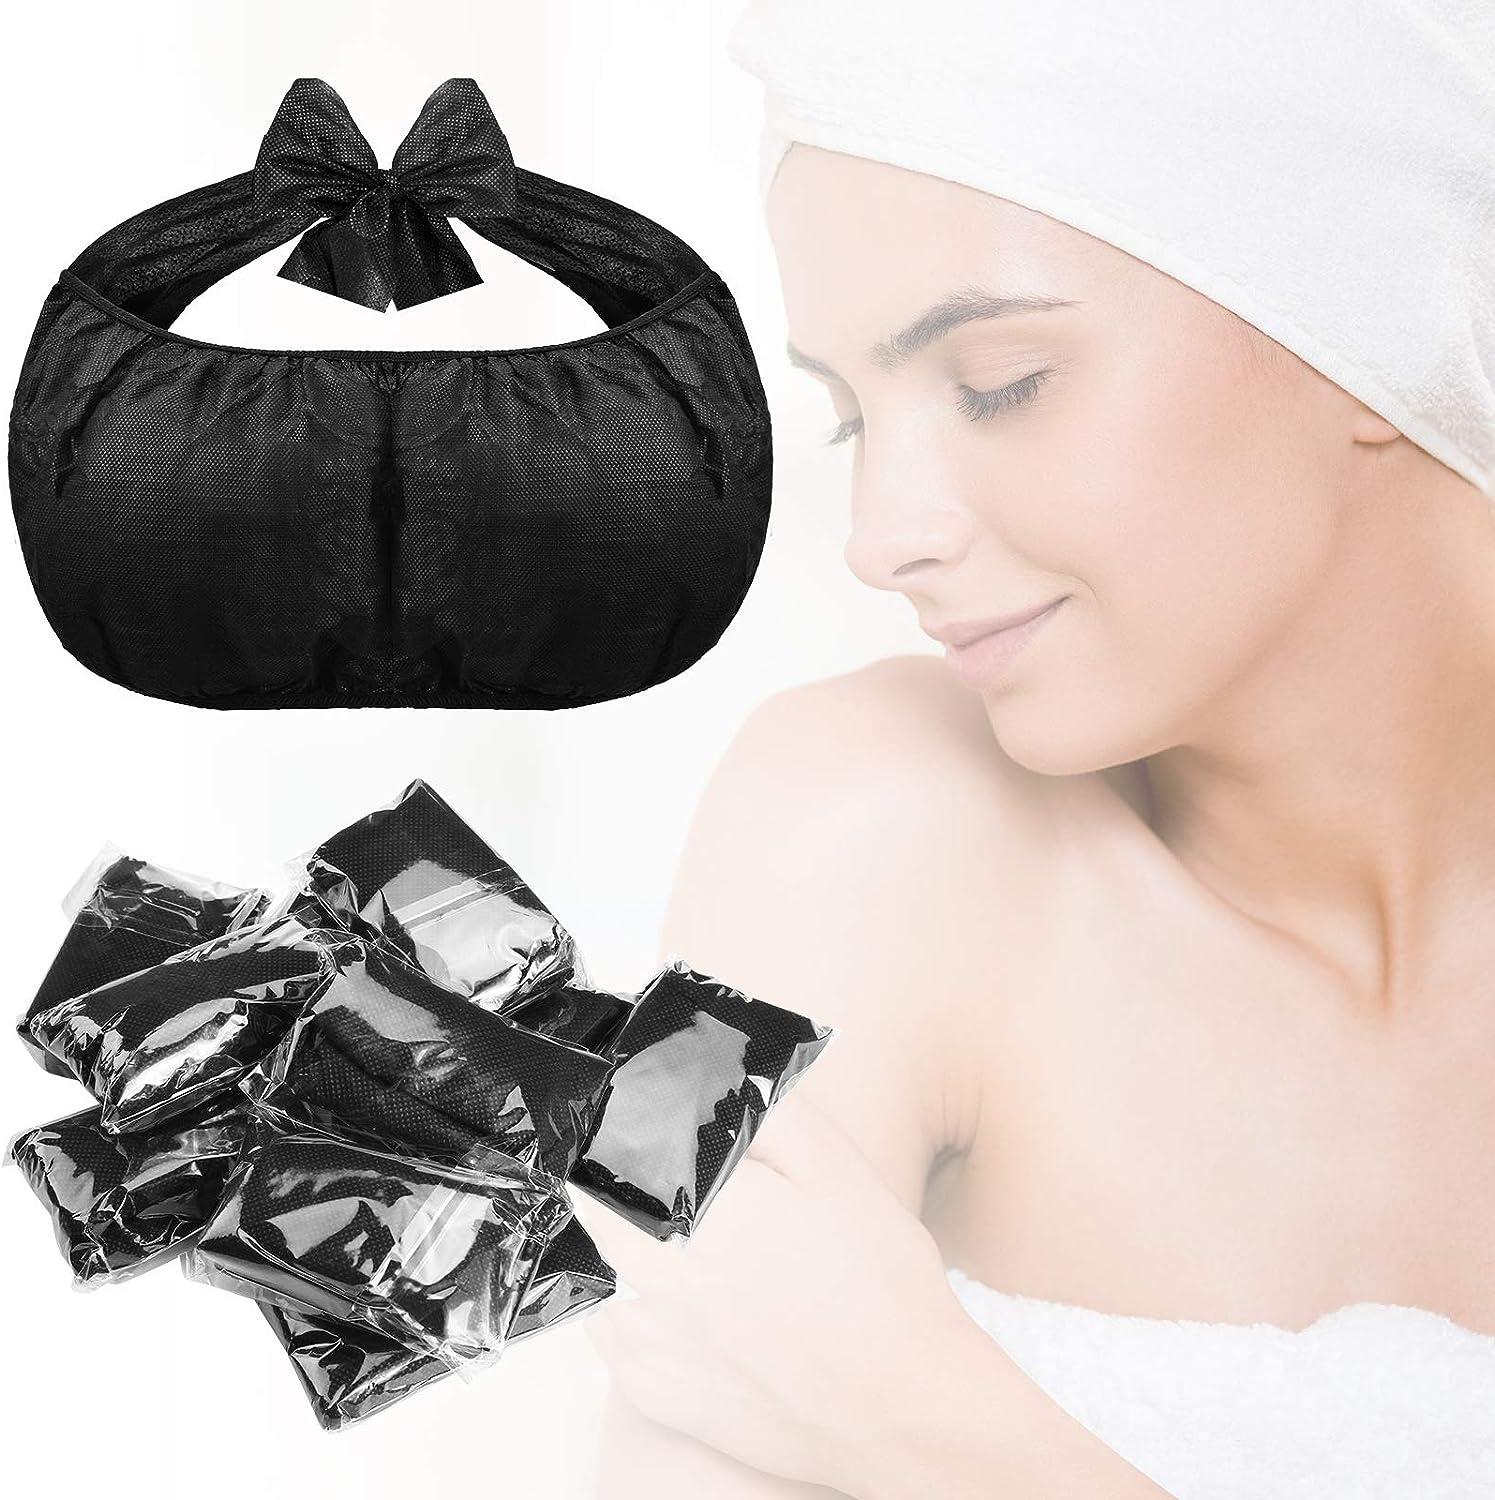 LiRuiPengBJ Disposable Bras Black Women's Disposable Sunless Spray for  Travel Spa Massage (Color : Black, Size : 200 Pieces) : Beauty & Personal  Care, personal arte brás fotos 